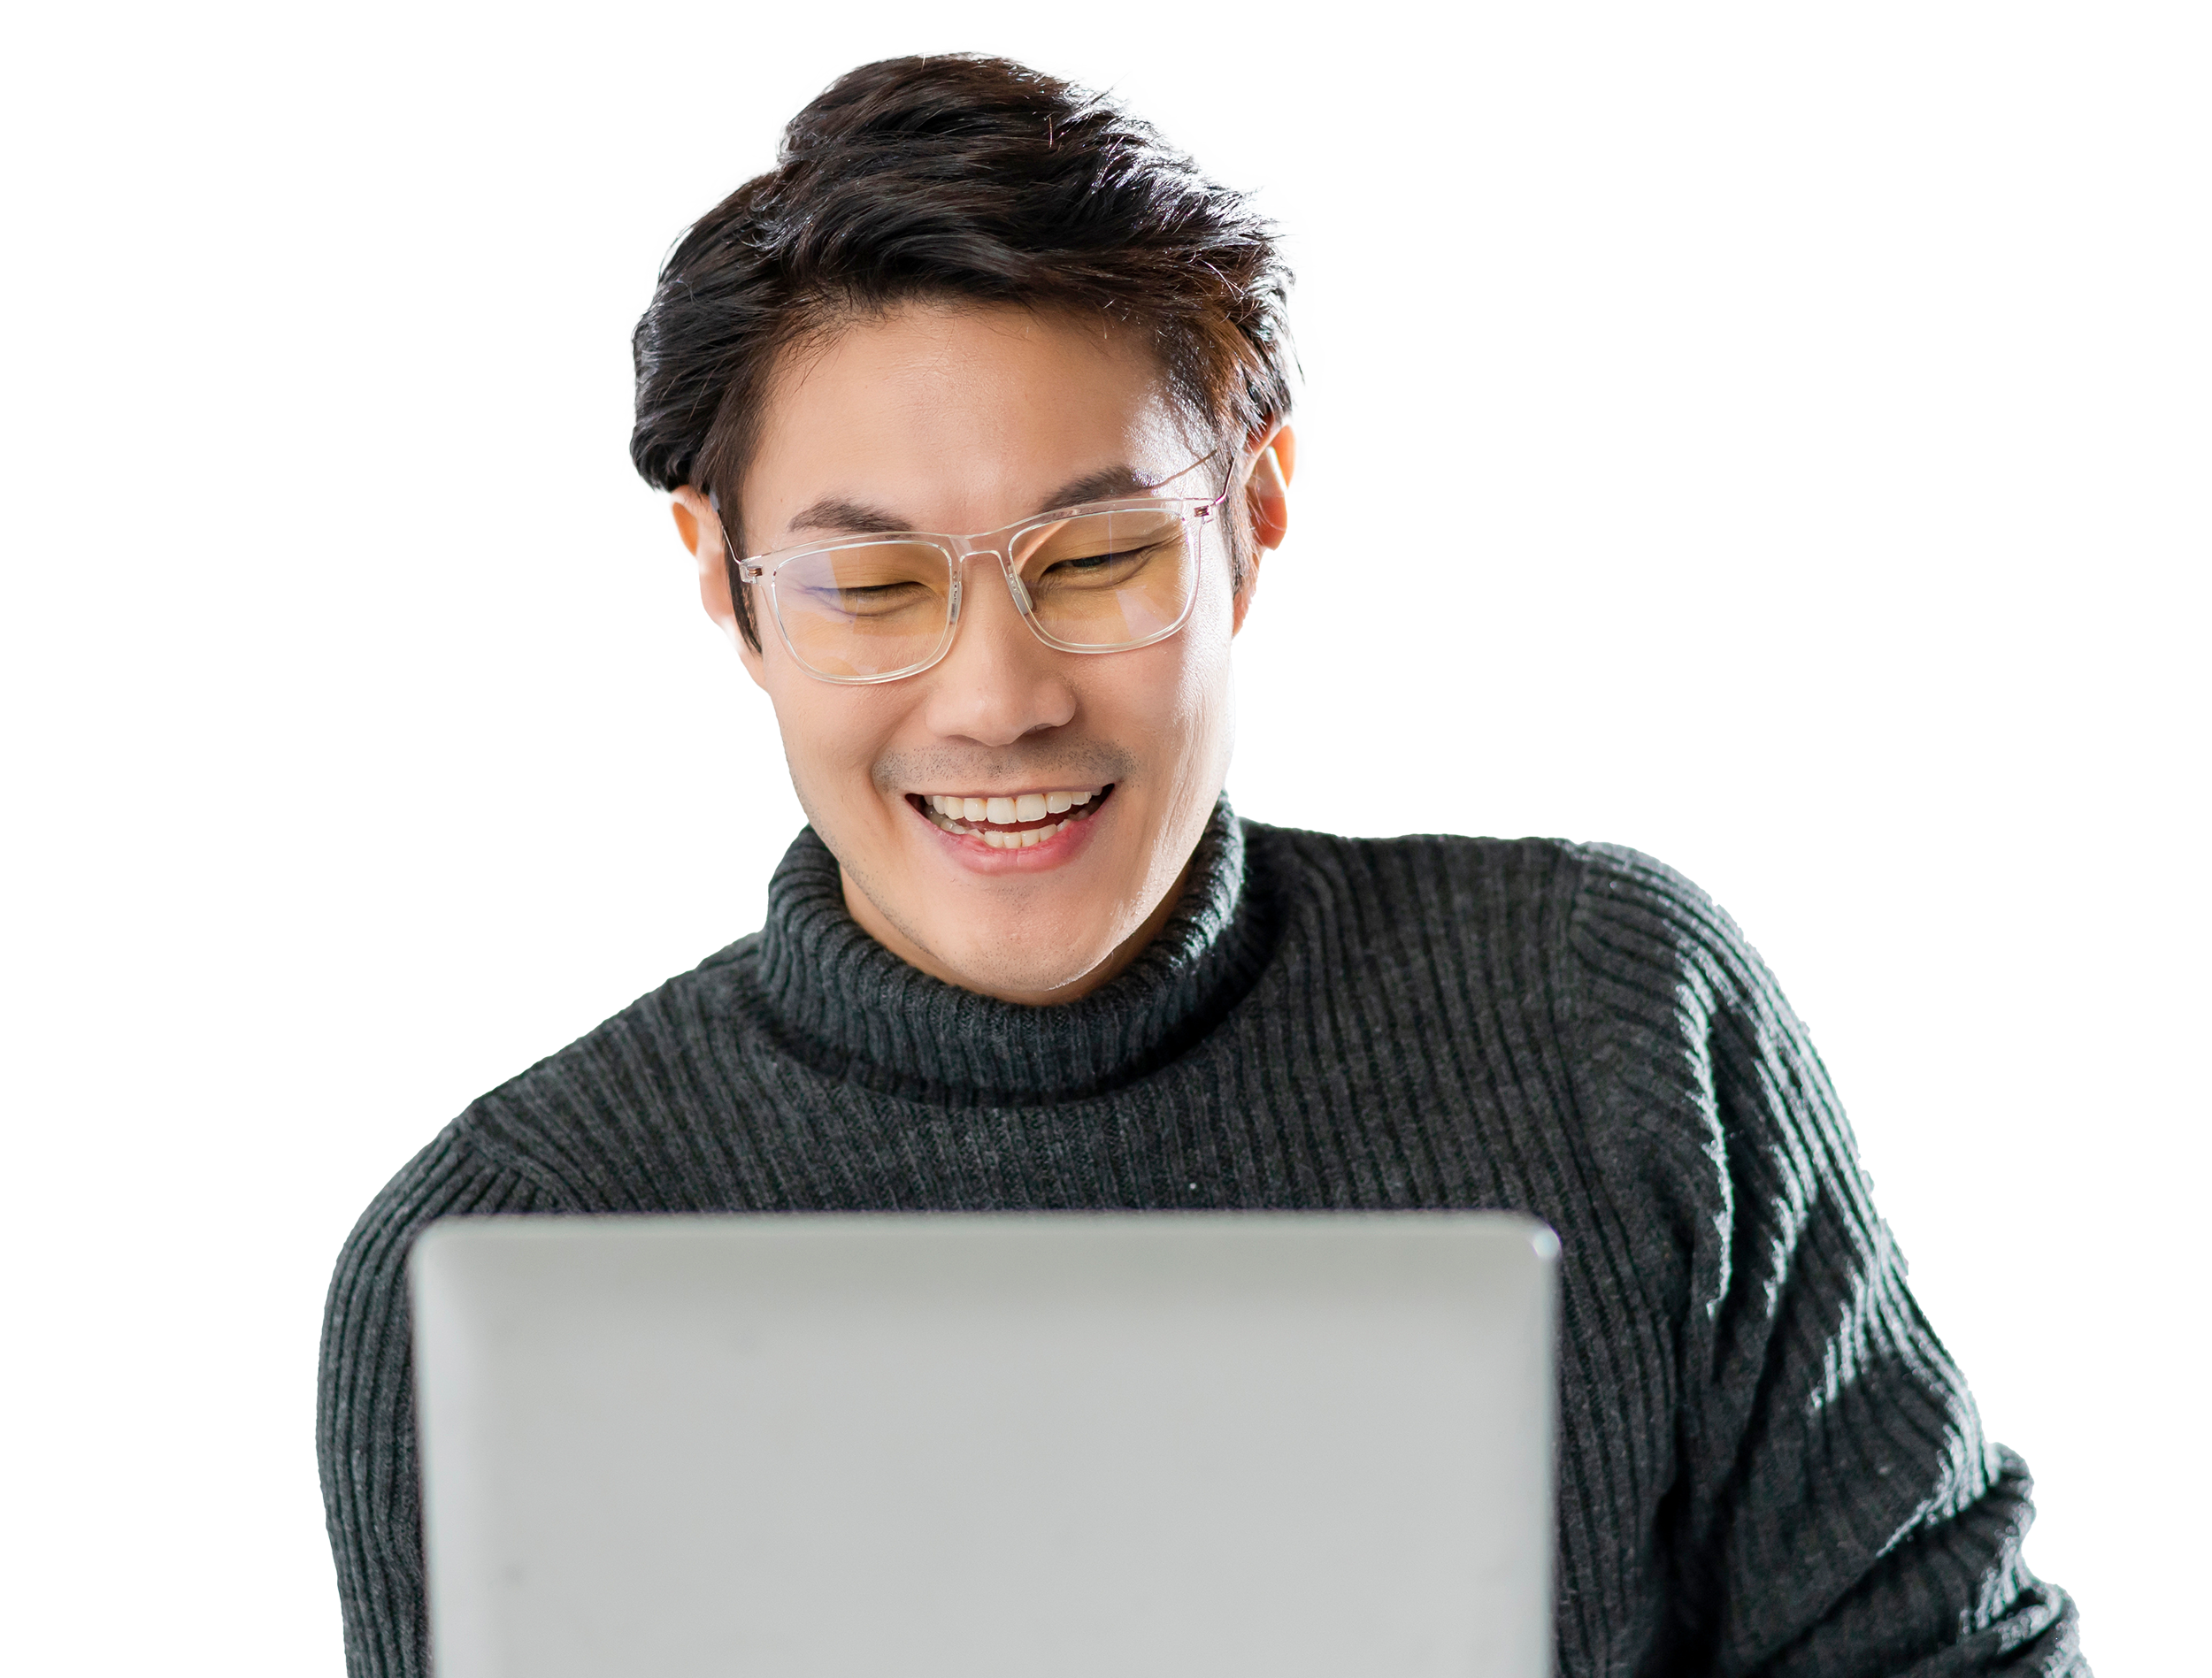 Man wearing glasses looking at laptop